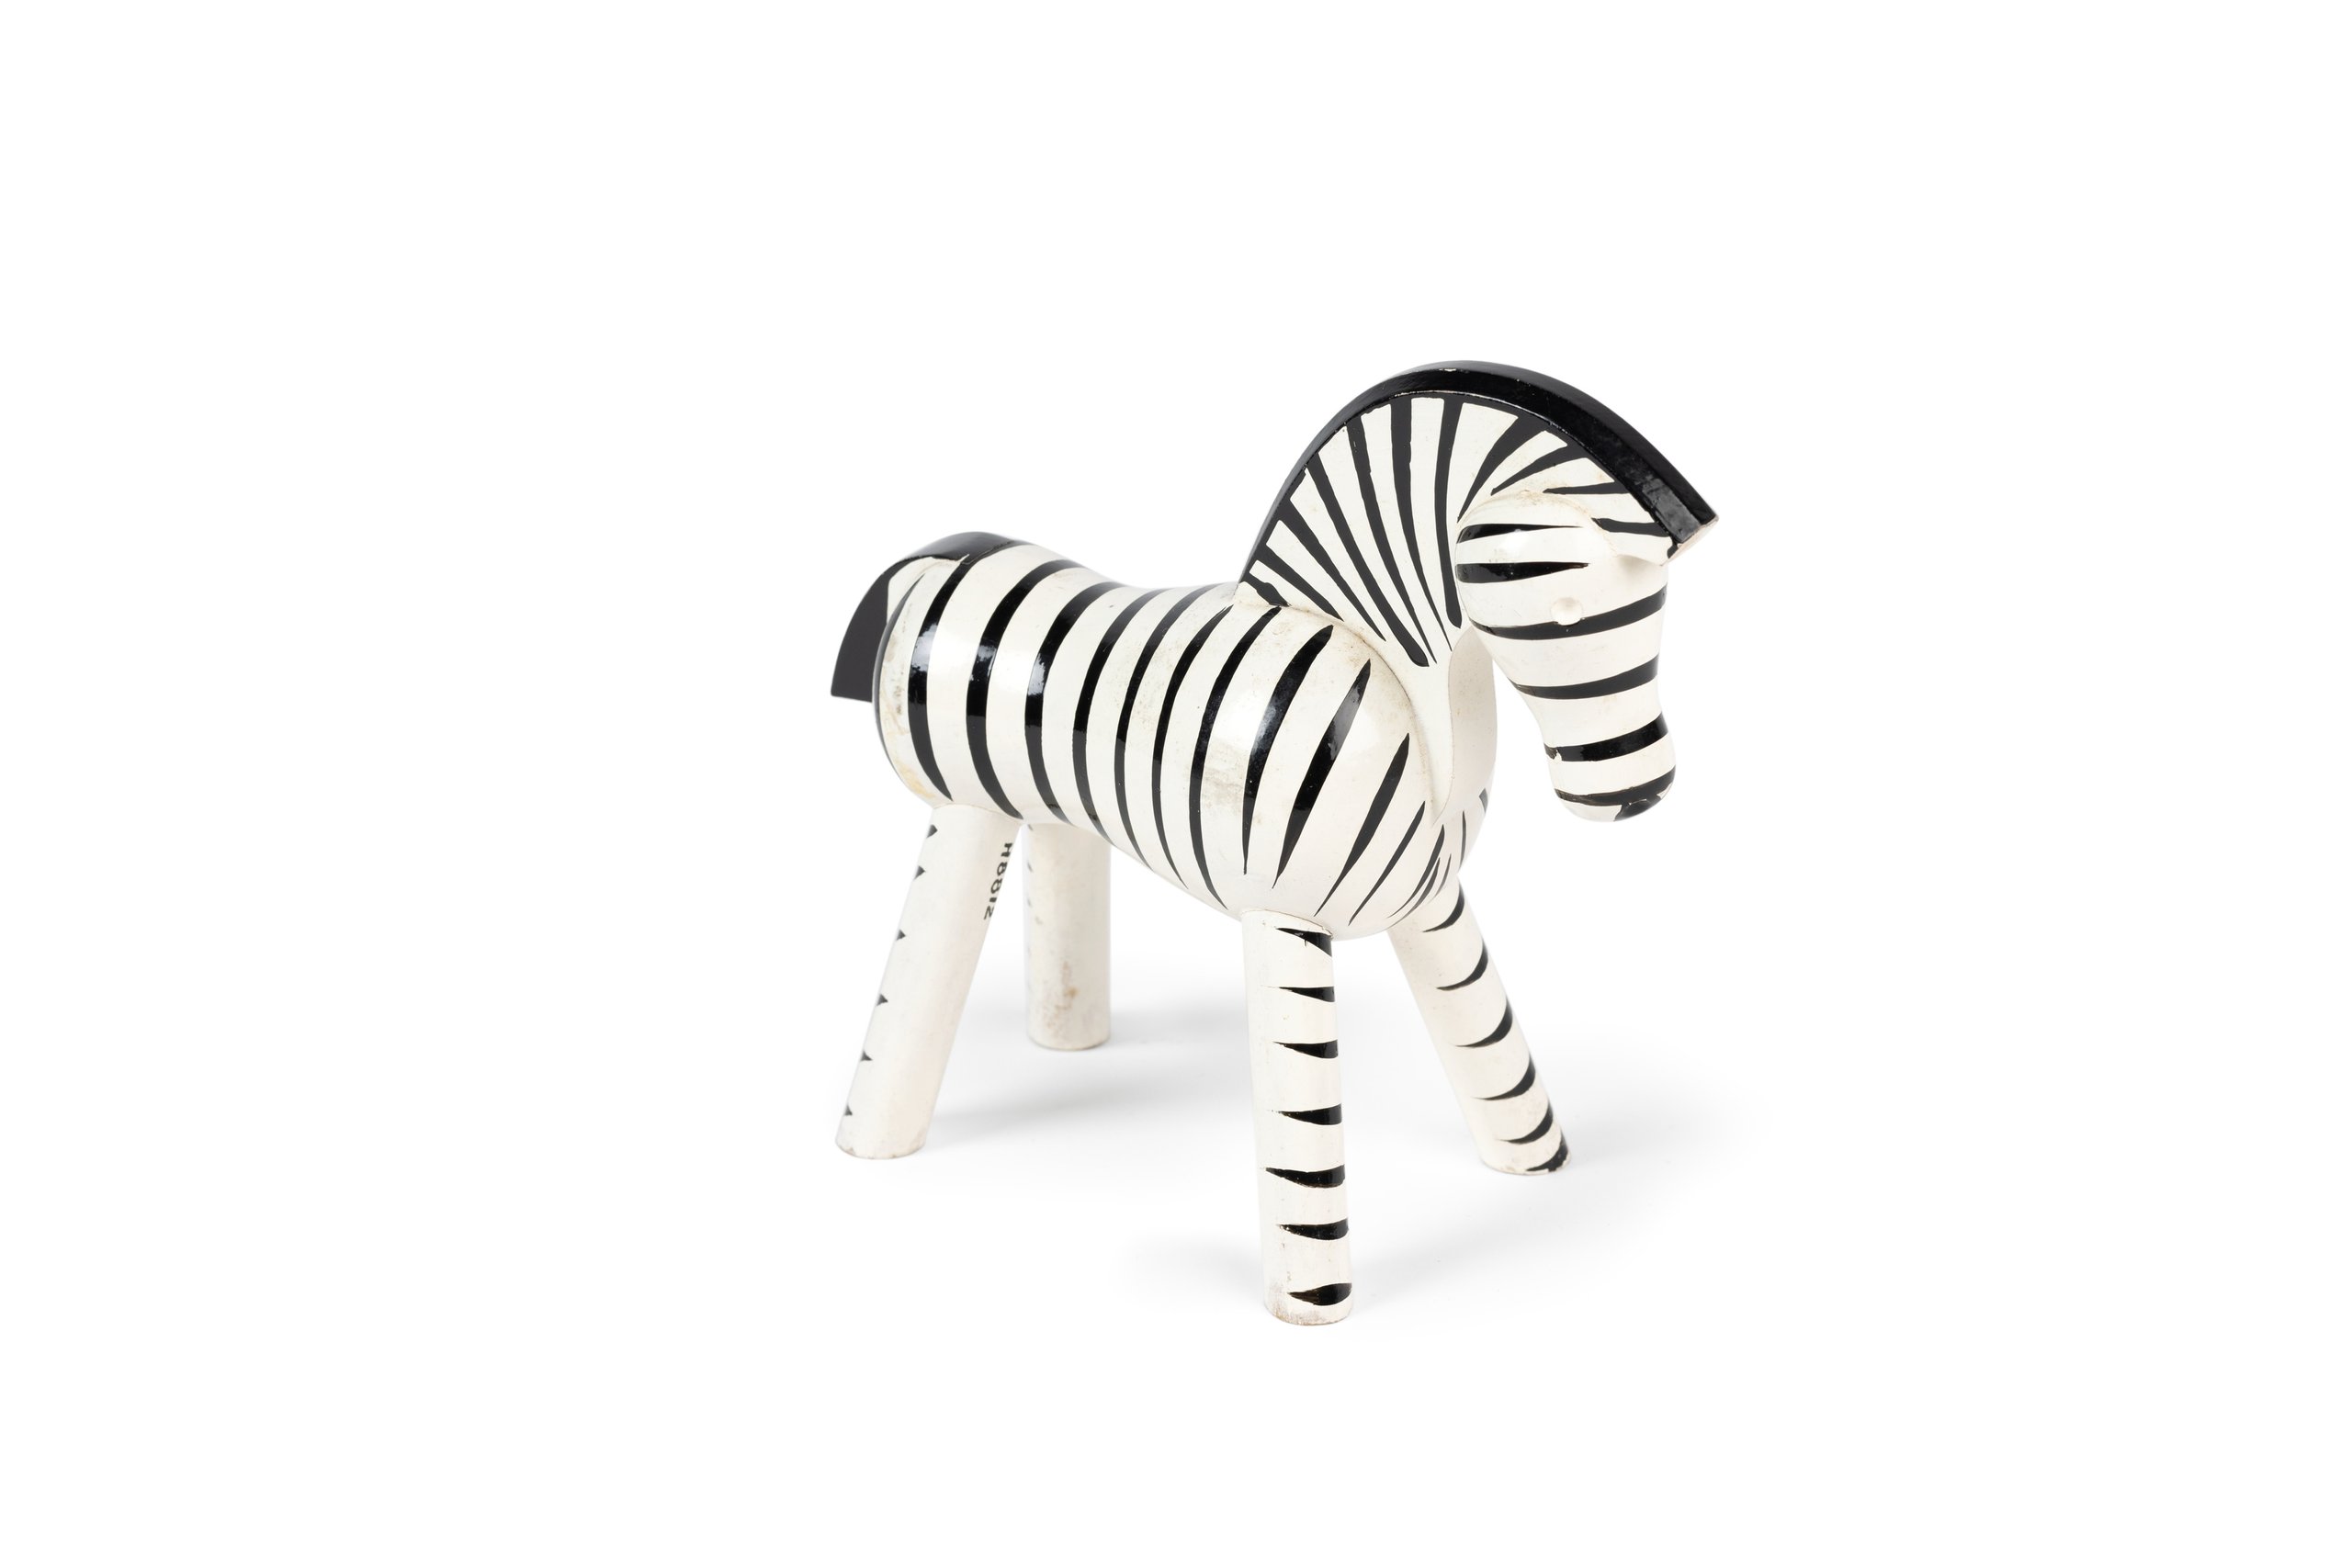 Toy zebra designed by Kay Bojesen